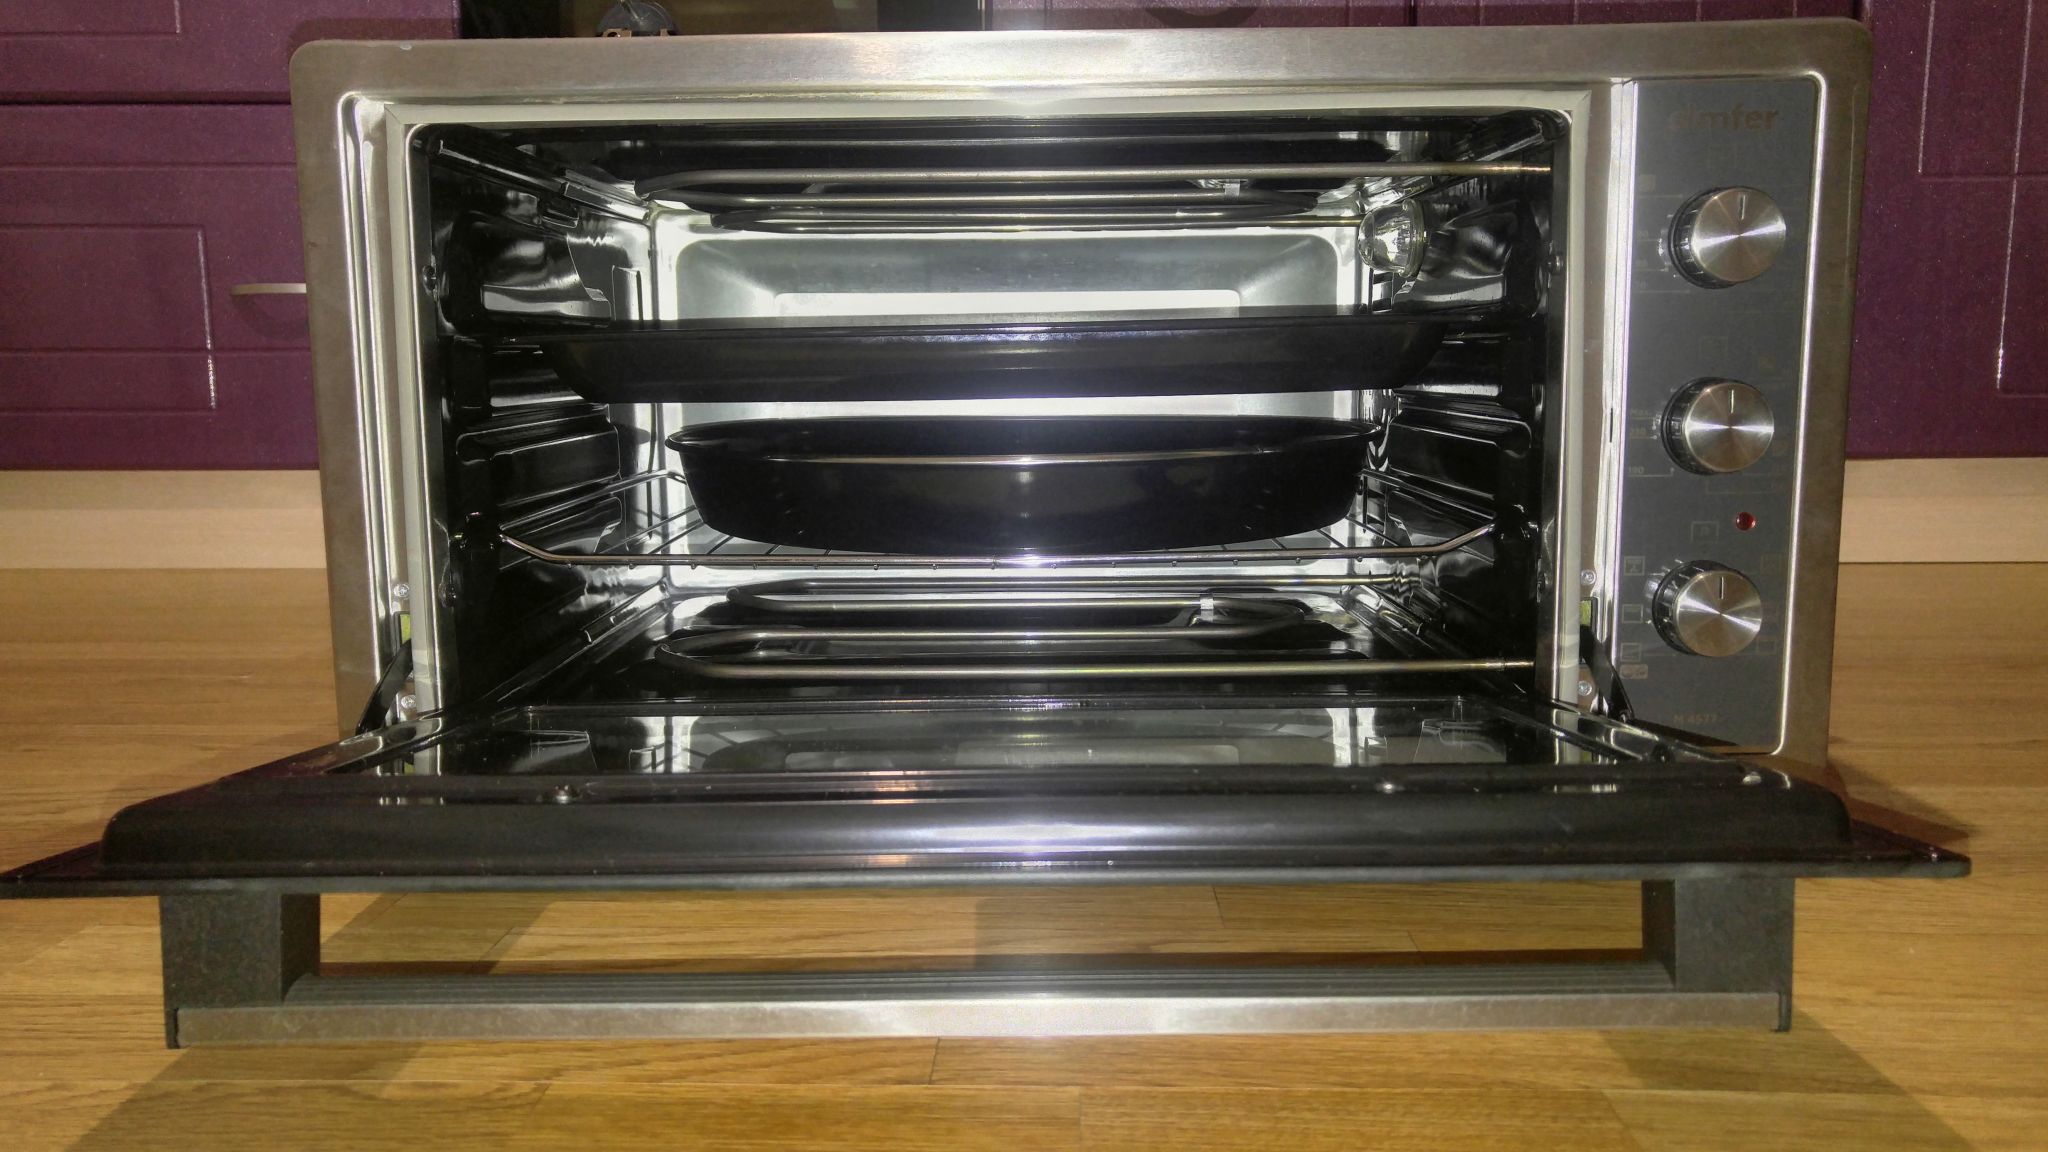 мини печь встраиваемая для кухни 40 см встраиваемая